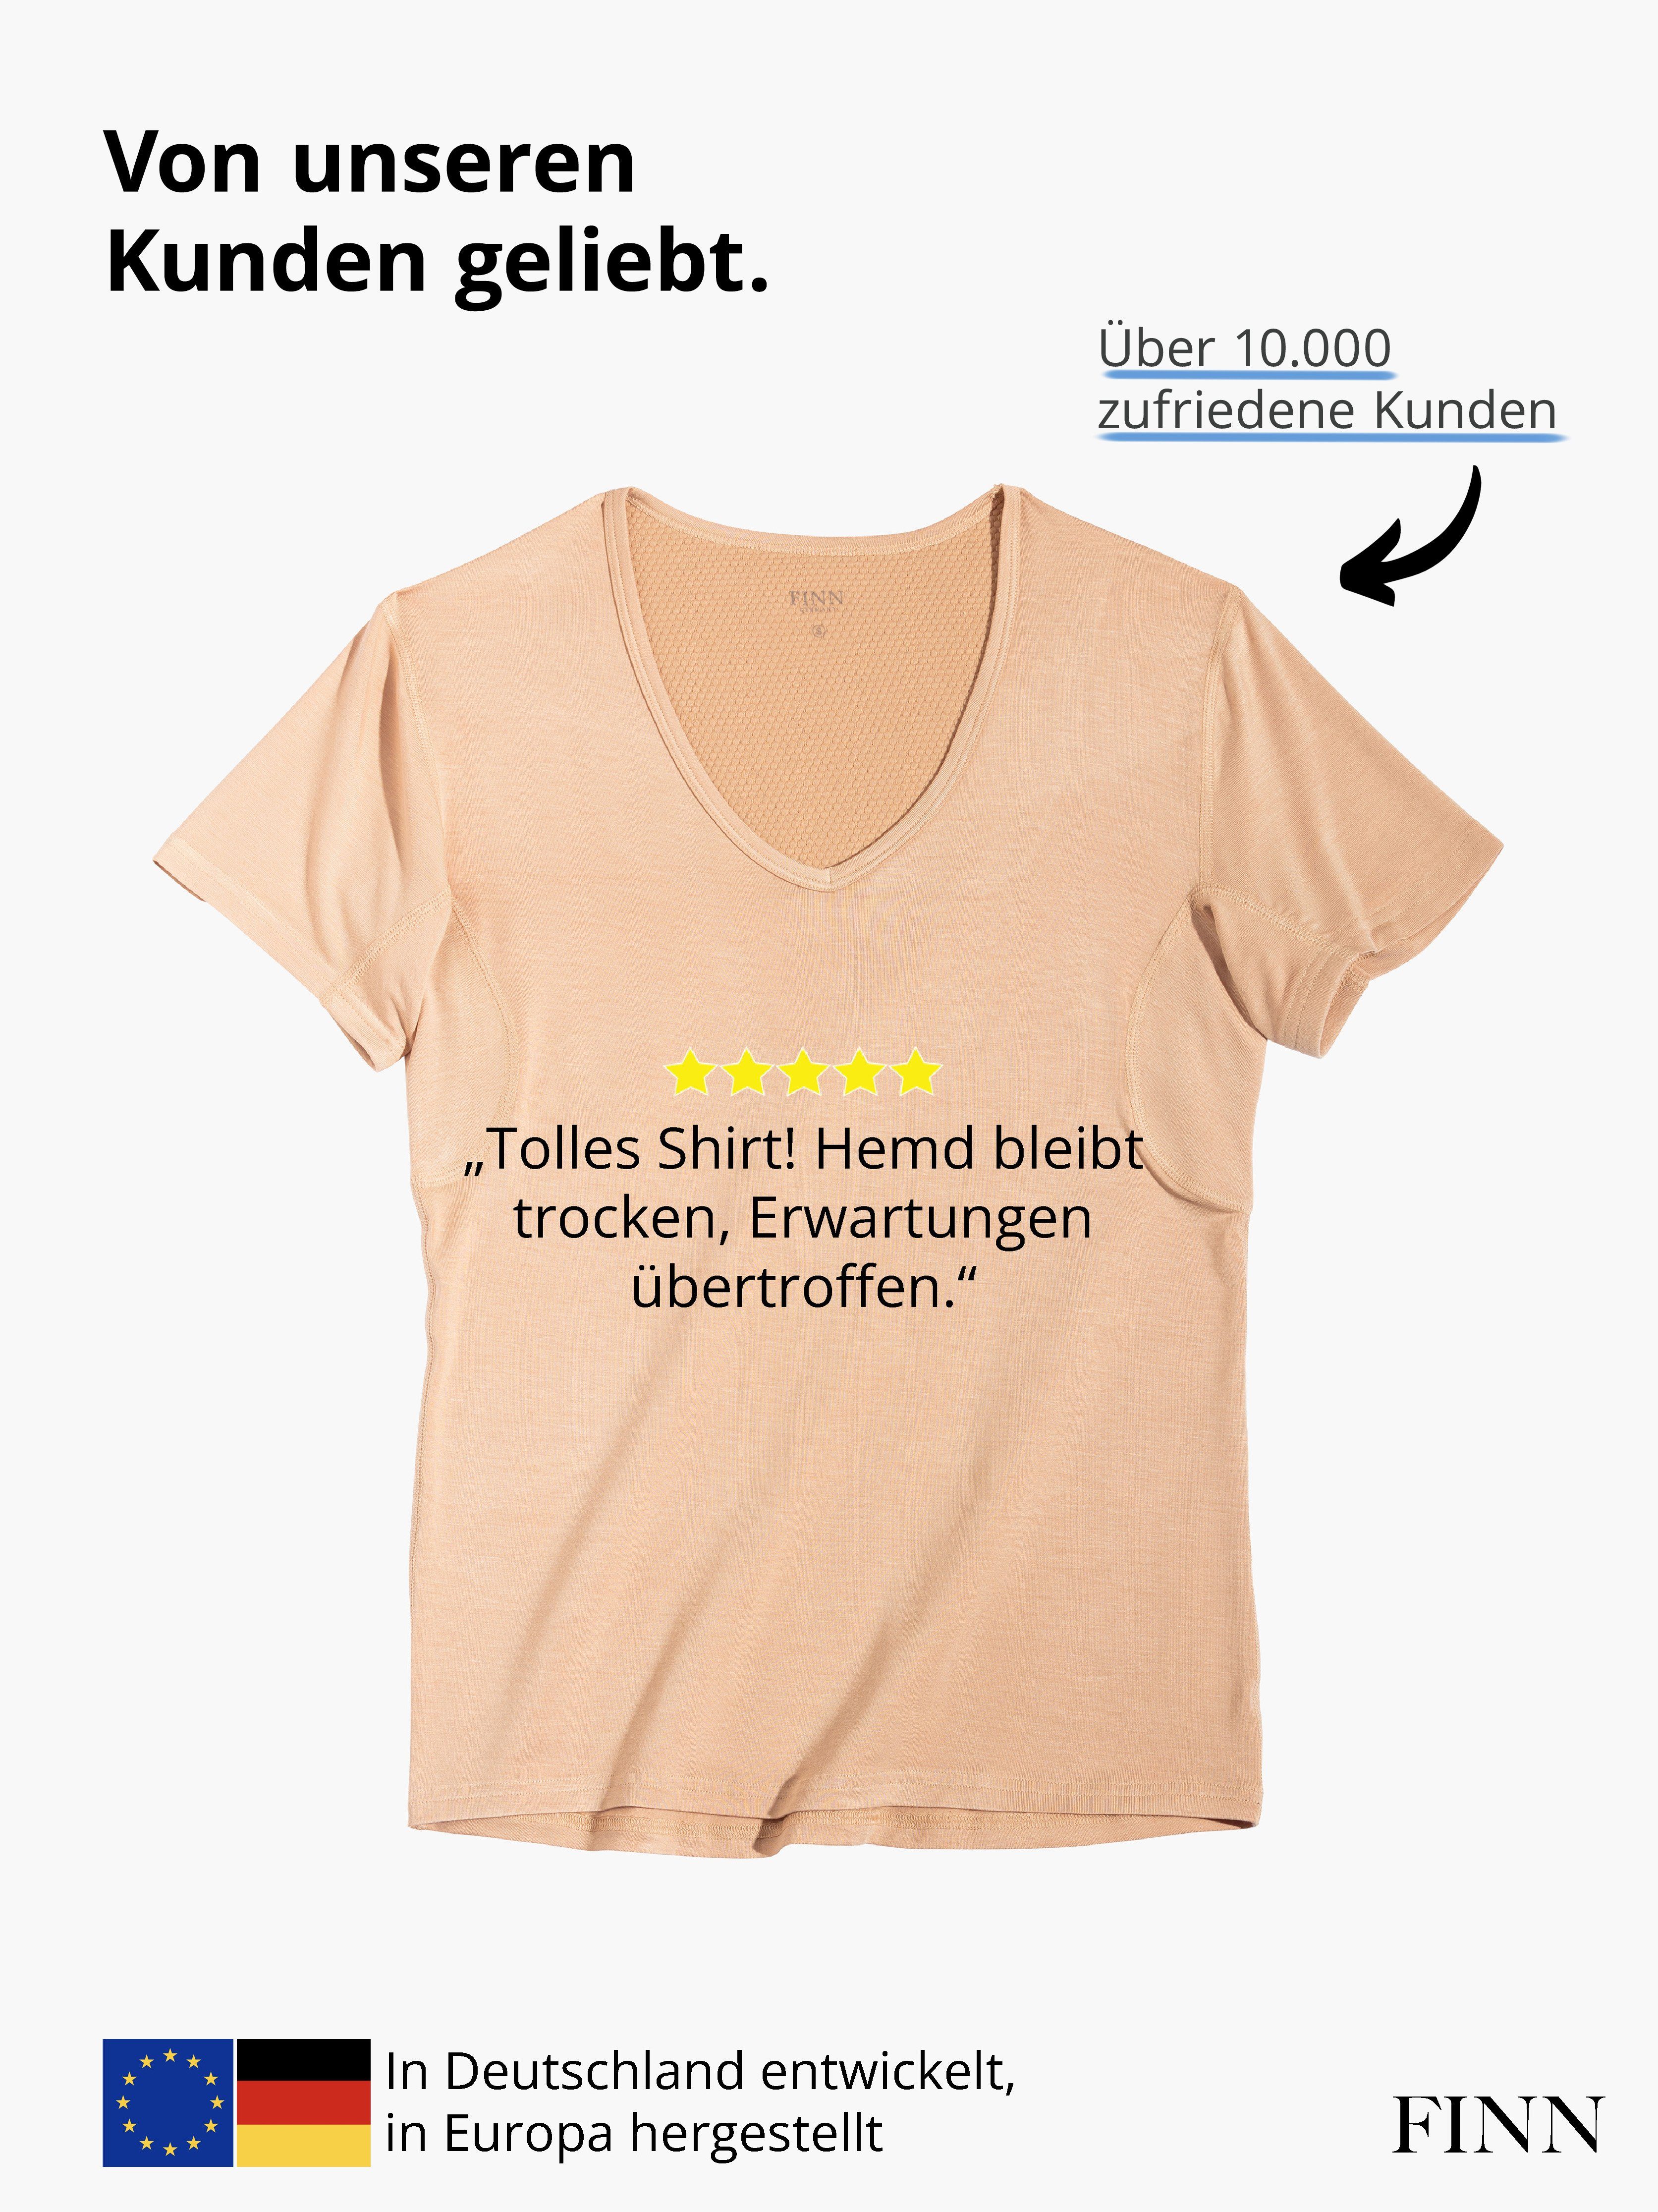 Unterhemd 100% Herren garantierte vor FINN Light-Beige Wirkung Design Unterhemd Schweißflecken, Anti-Schweiß Schutz